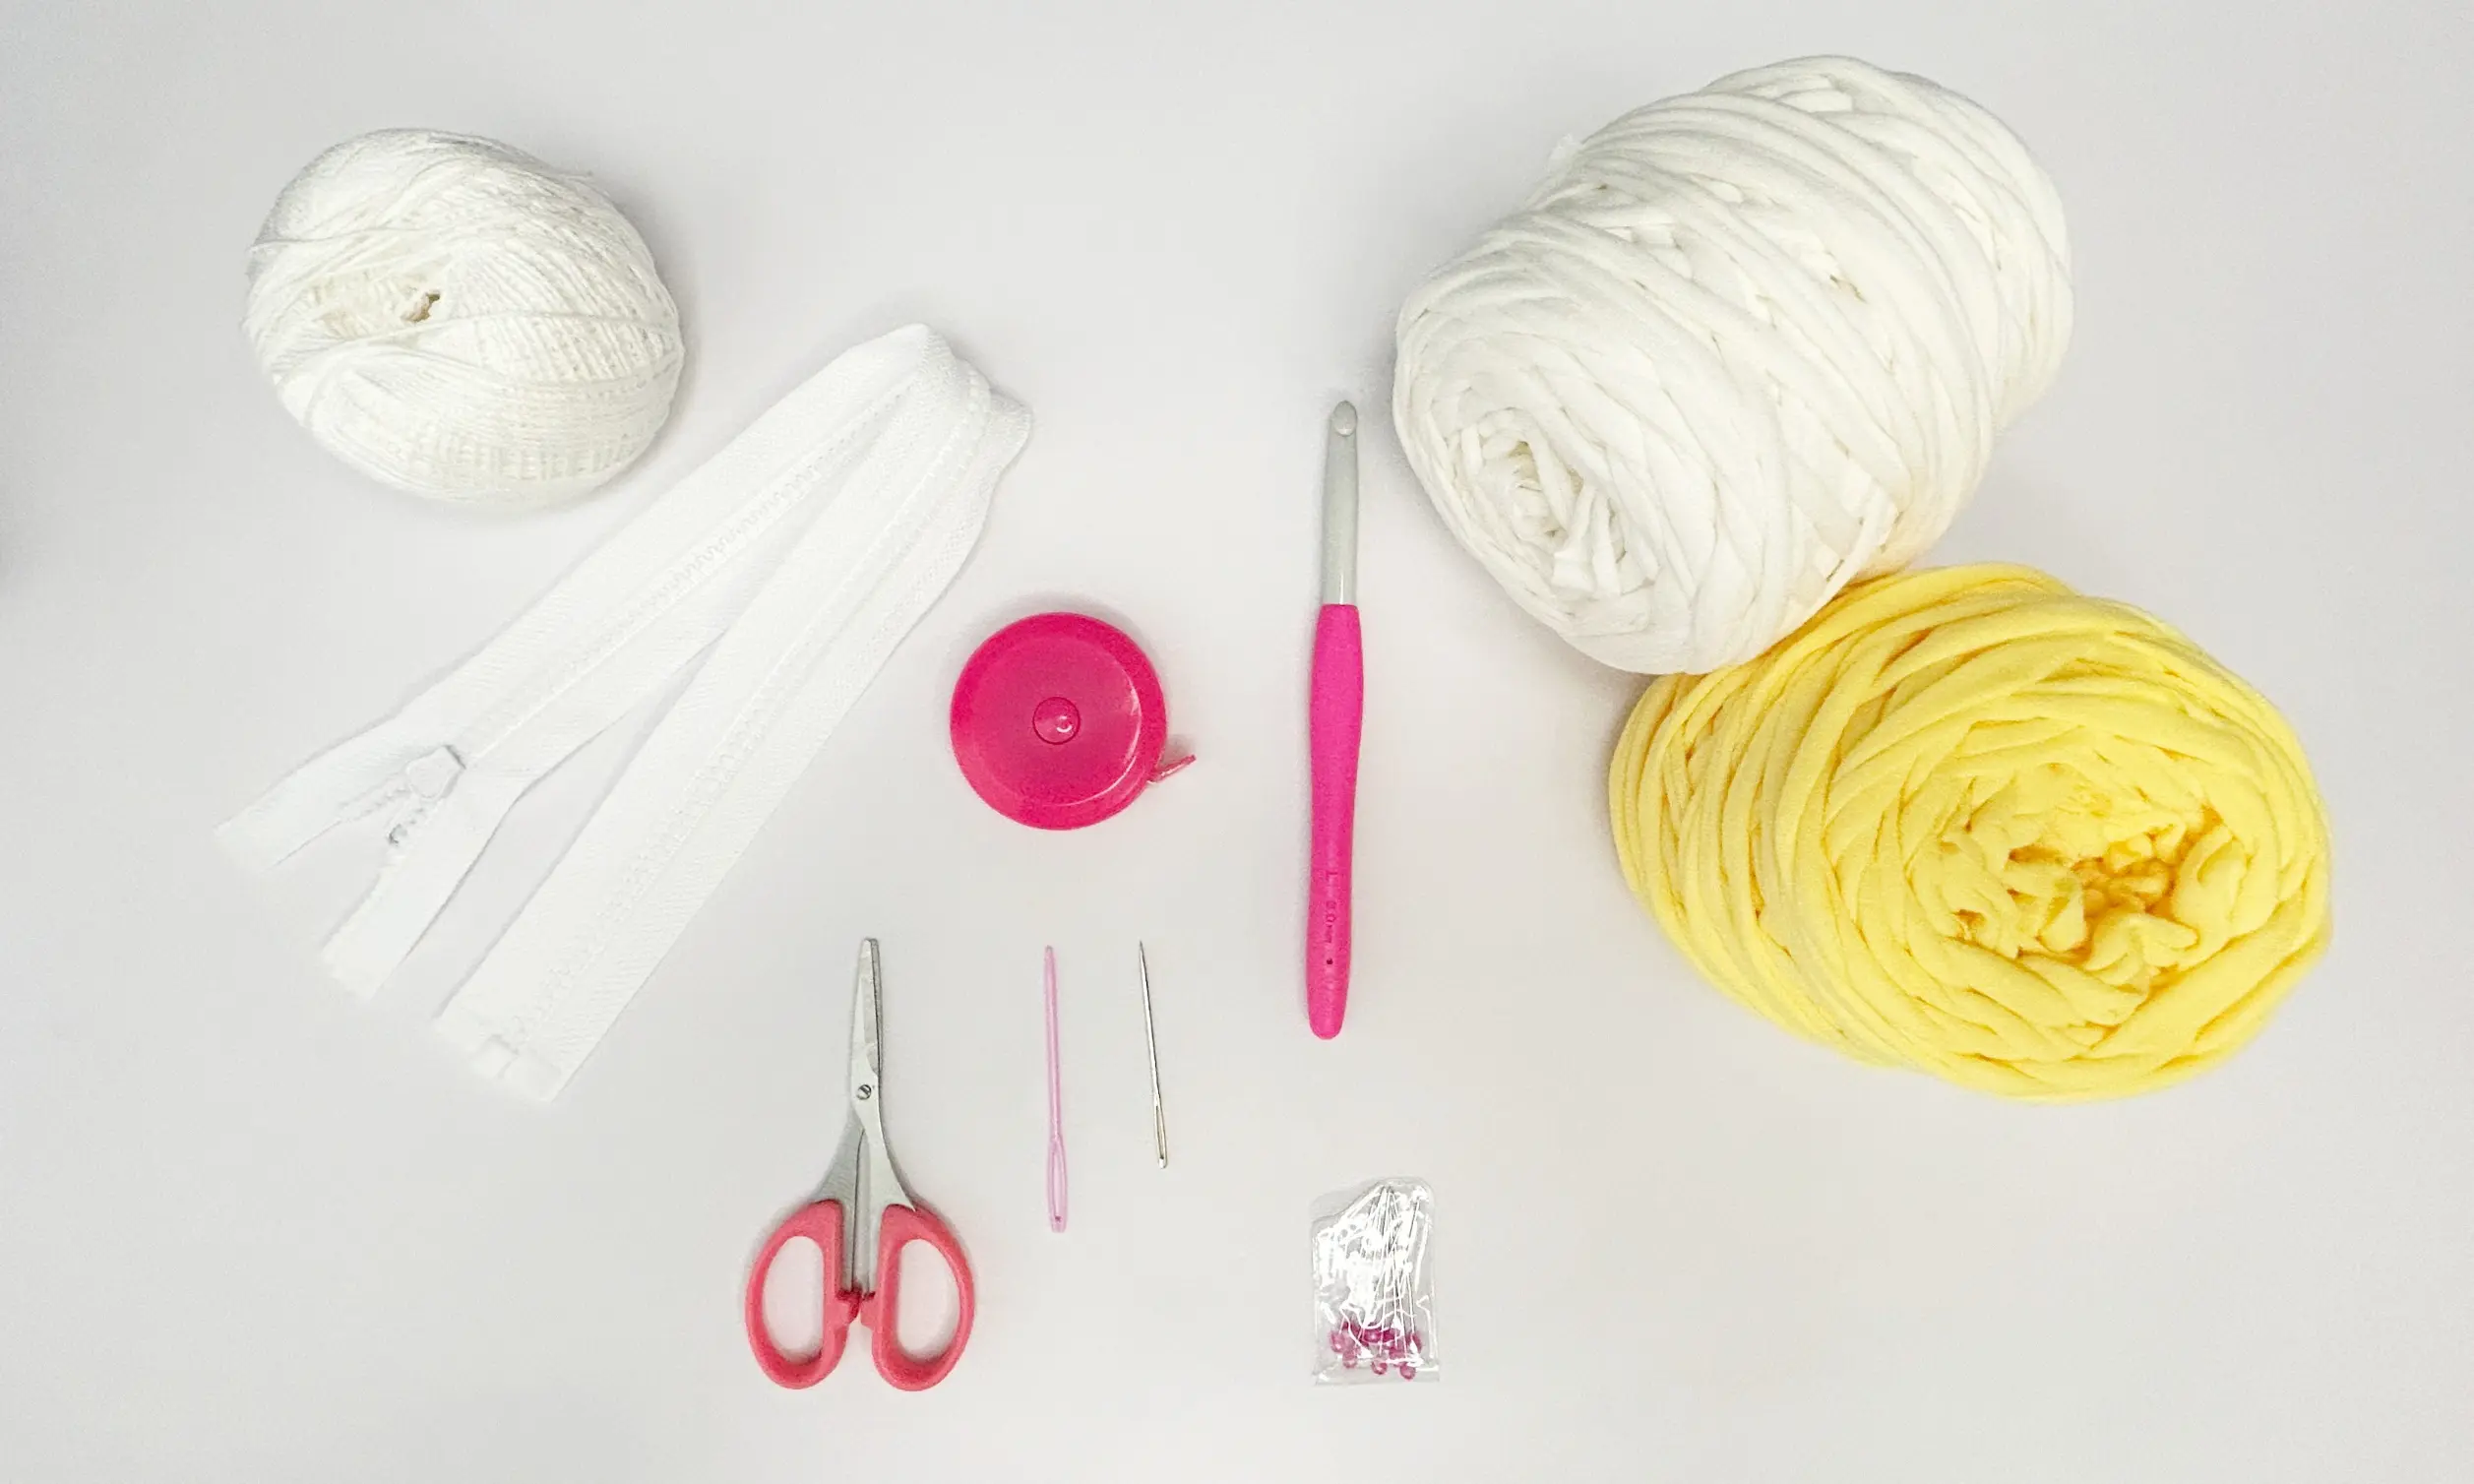 Lemony Crochet Shoulder Bag tools and materials